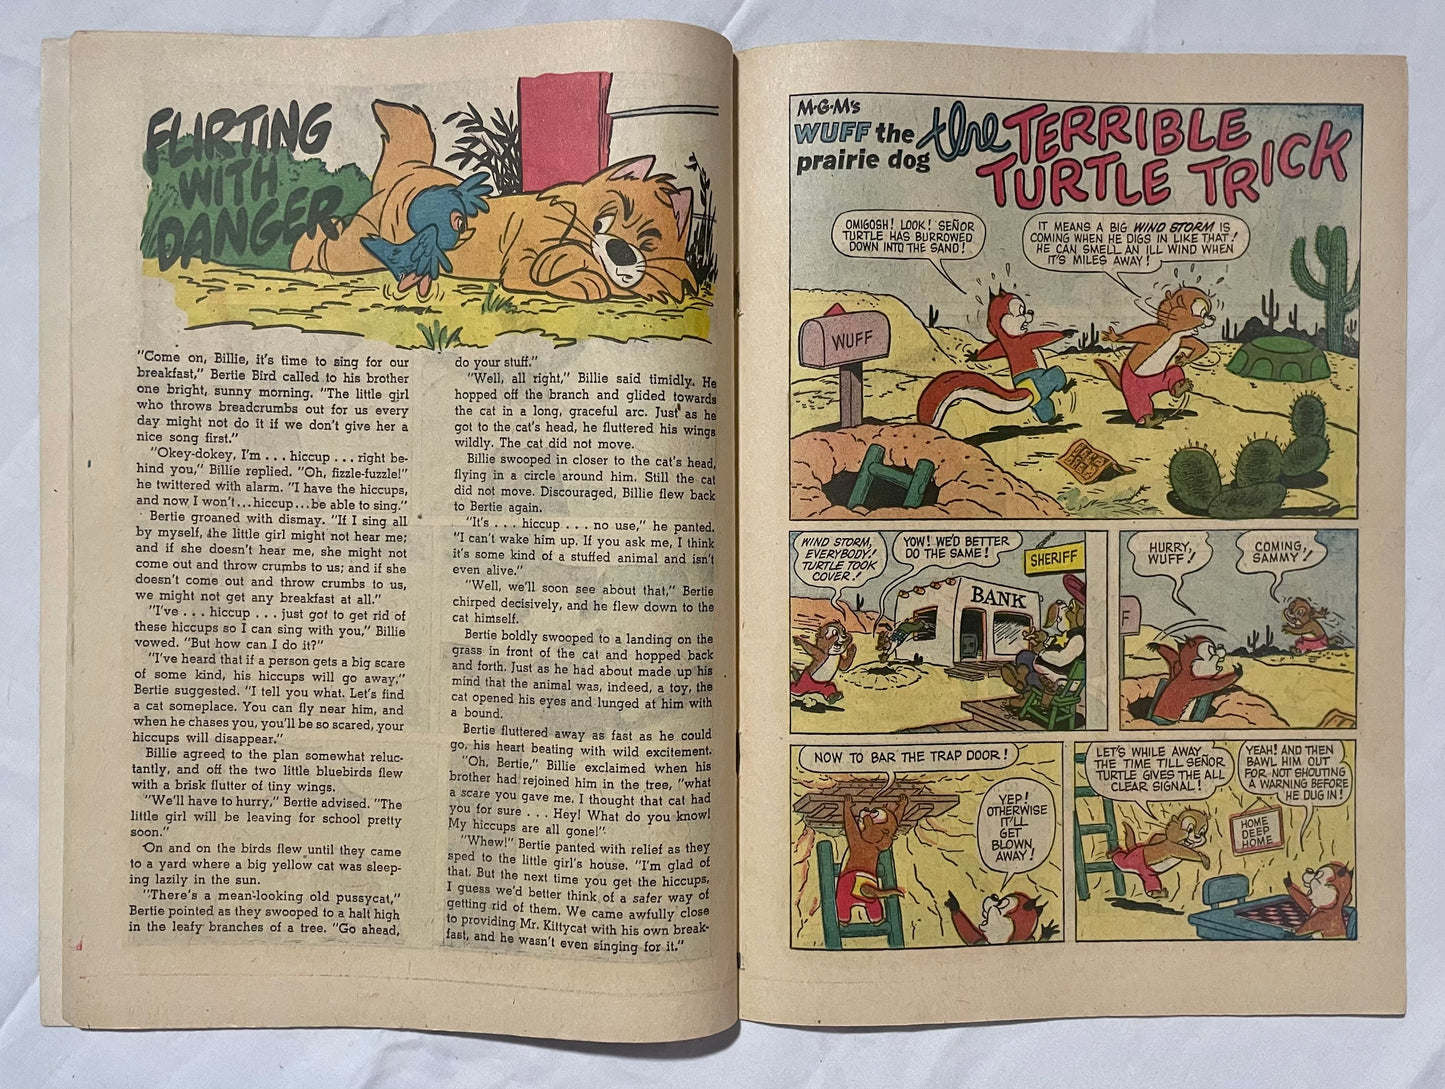 Dell Comics Tom and Jerry Comics No. 195